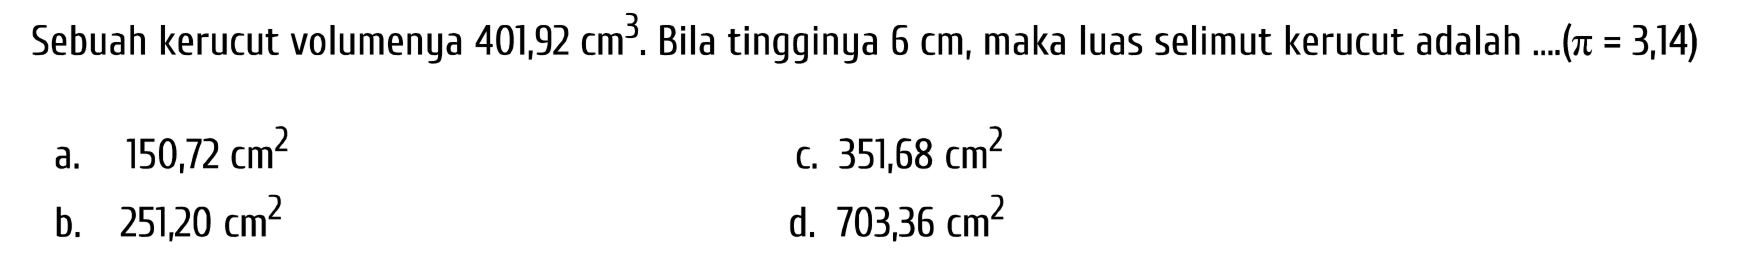 Sebuah kerucut volumenya  401,92 cm^(3) . Bila tingginya  6 cm , maka luas selimut kerucut adalah ....  (pi=3,14) 
a.  150,72 cm^(2) 
c.  351,68 cm^(2) 
b.  251,20 cm^(2) 
d.  703,36 cm^(2) 